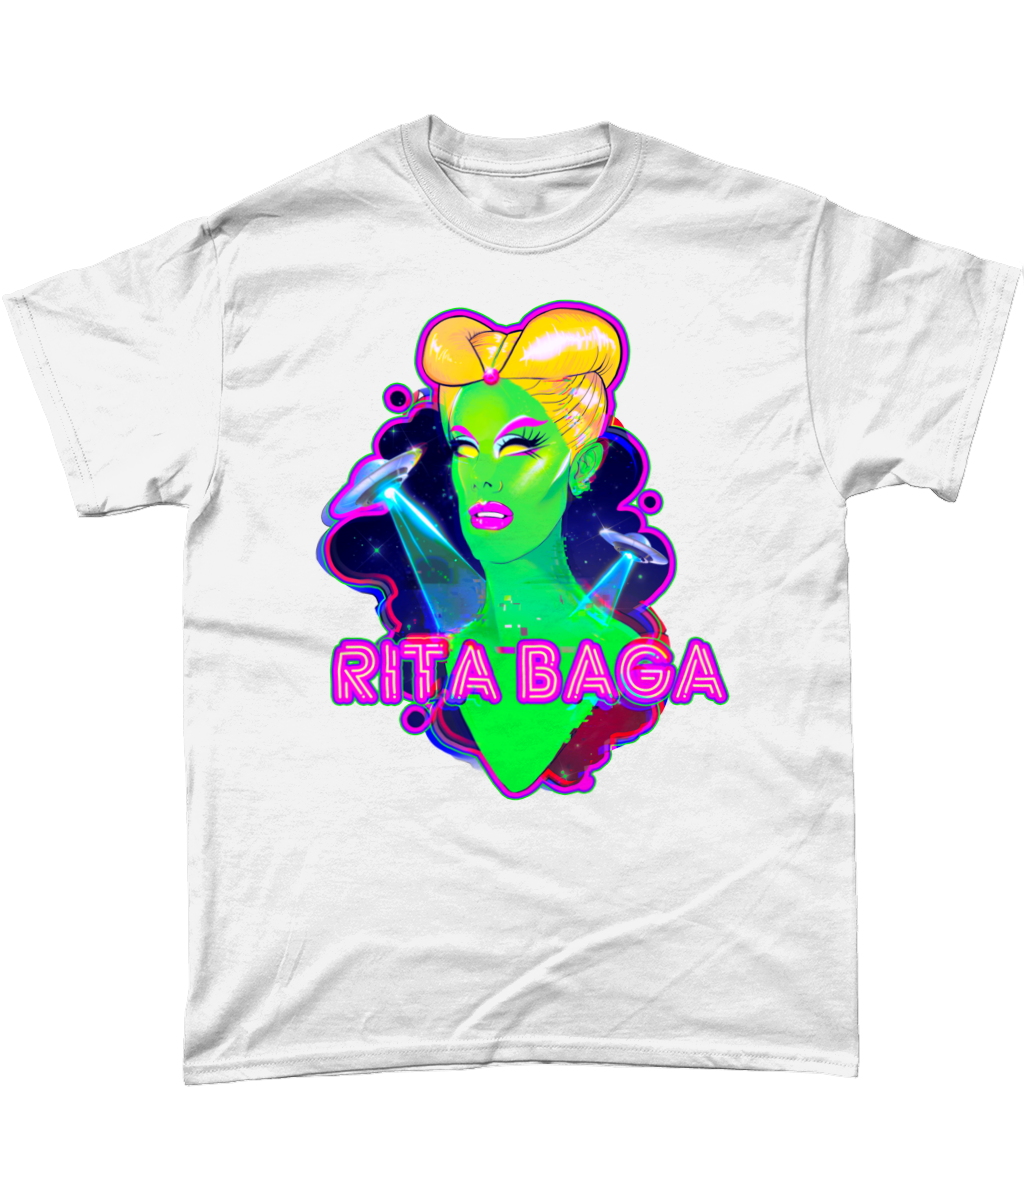 Rita Baga - Alien T-Shirt